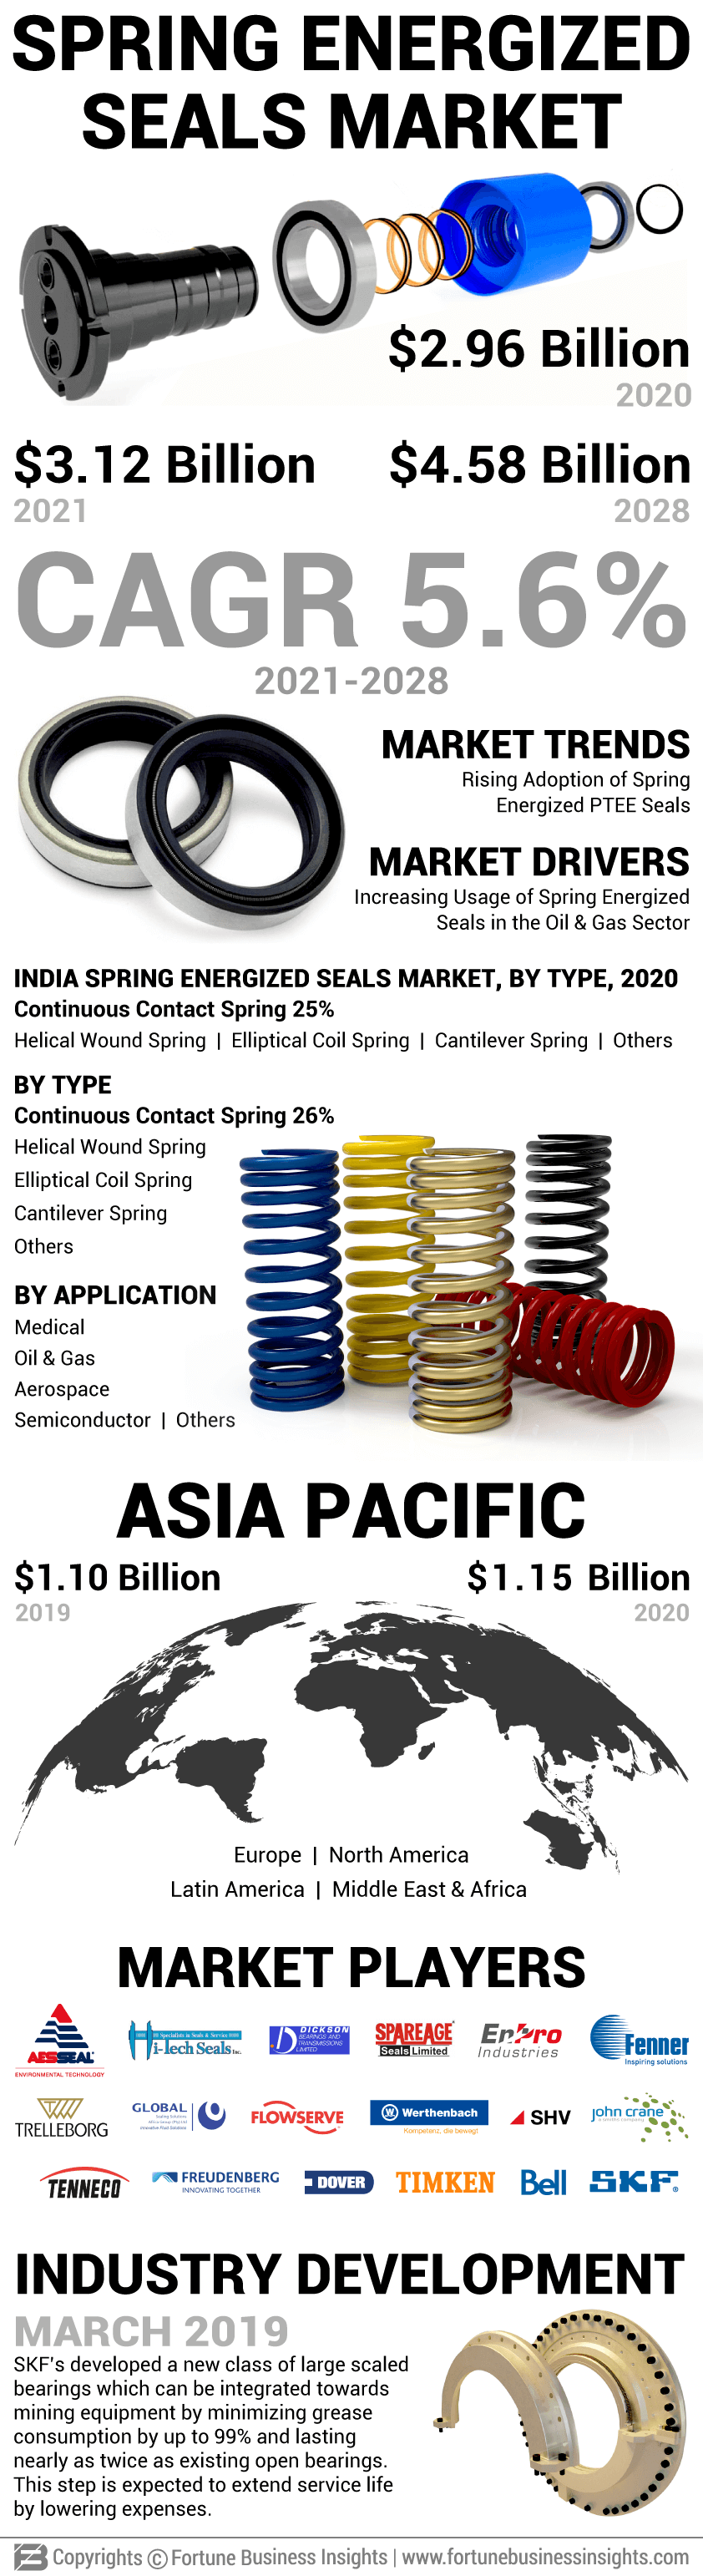 Spring Energized Seals Market